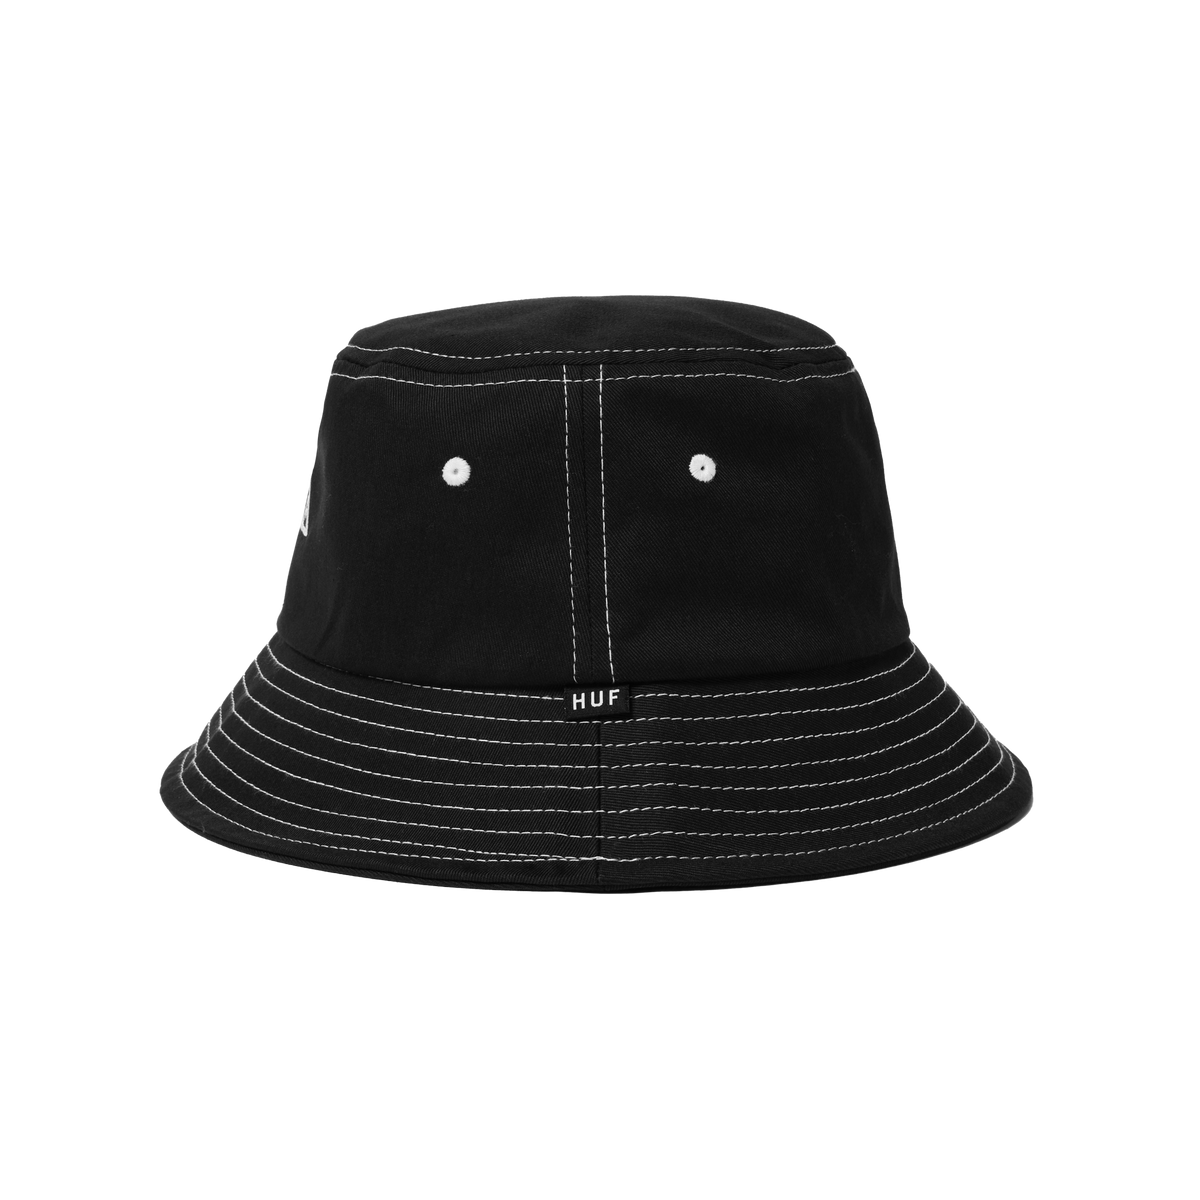 Huf - Black Bucket Hat - Set TT Black Bucket @ Hatstore